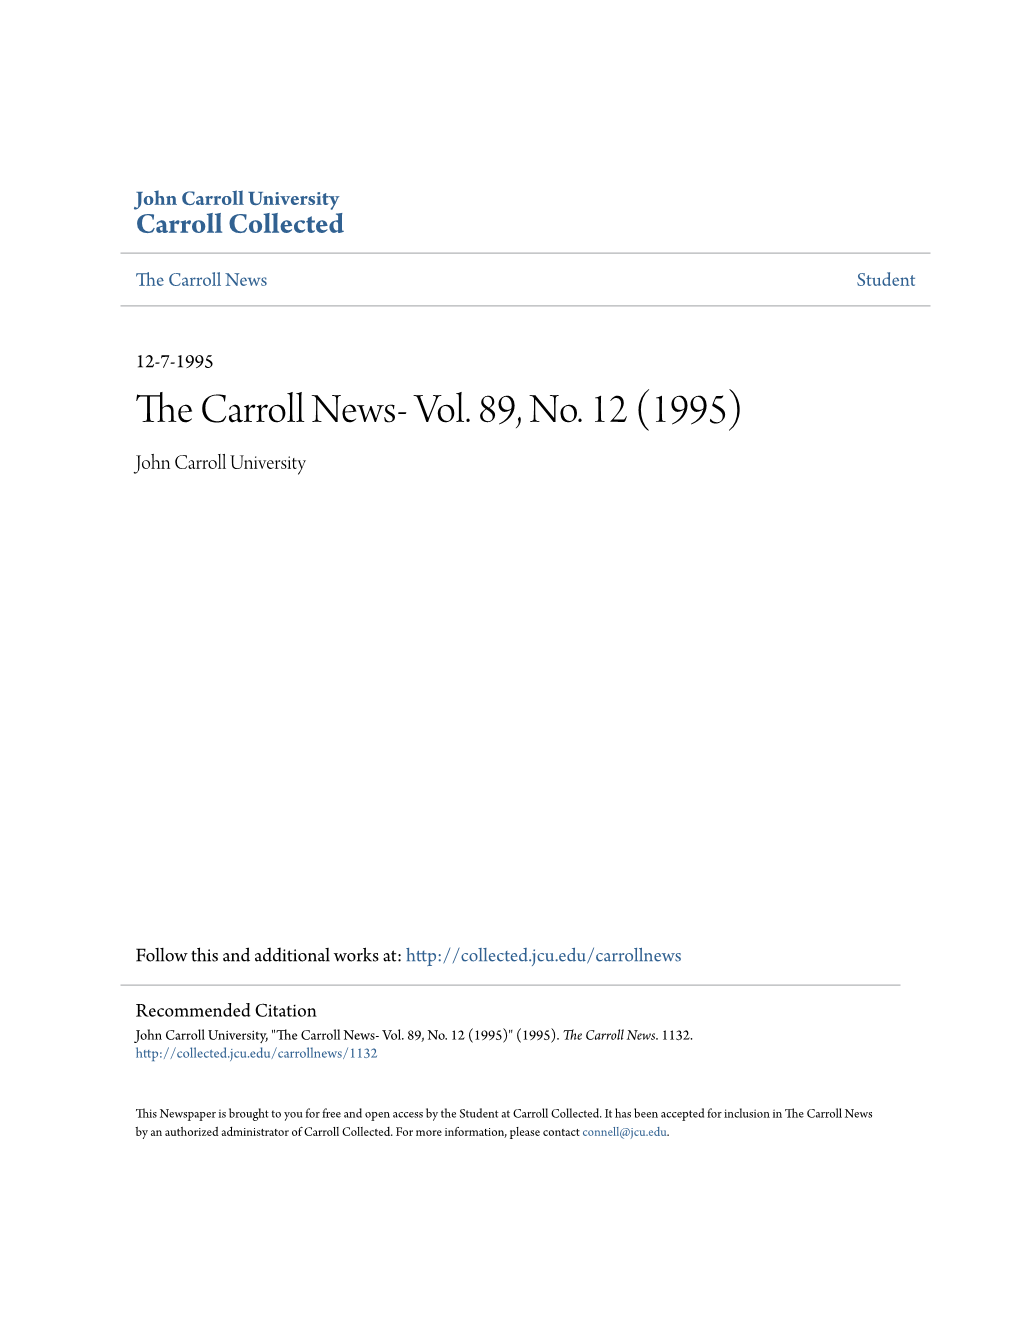 The Carroll News- Vol. 89, No. 12 (1995)